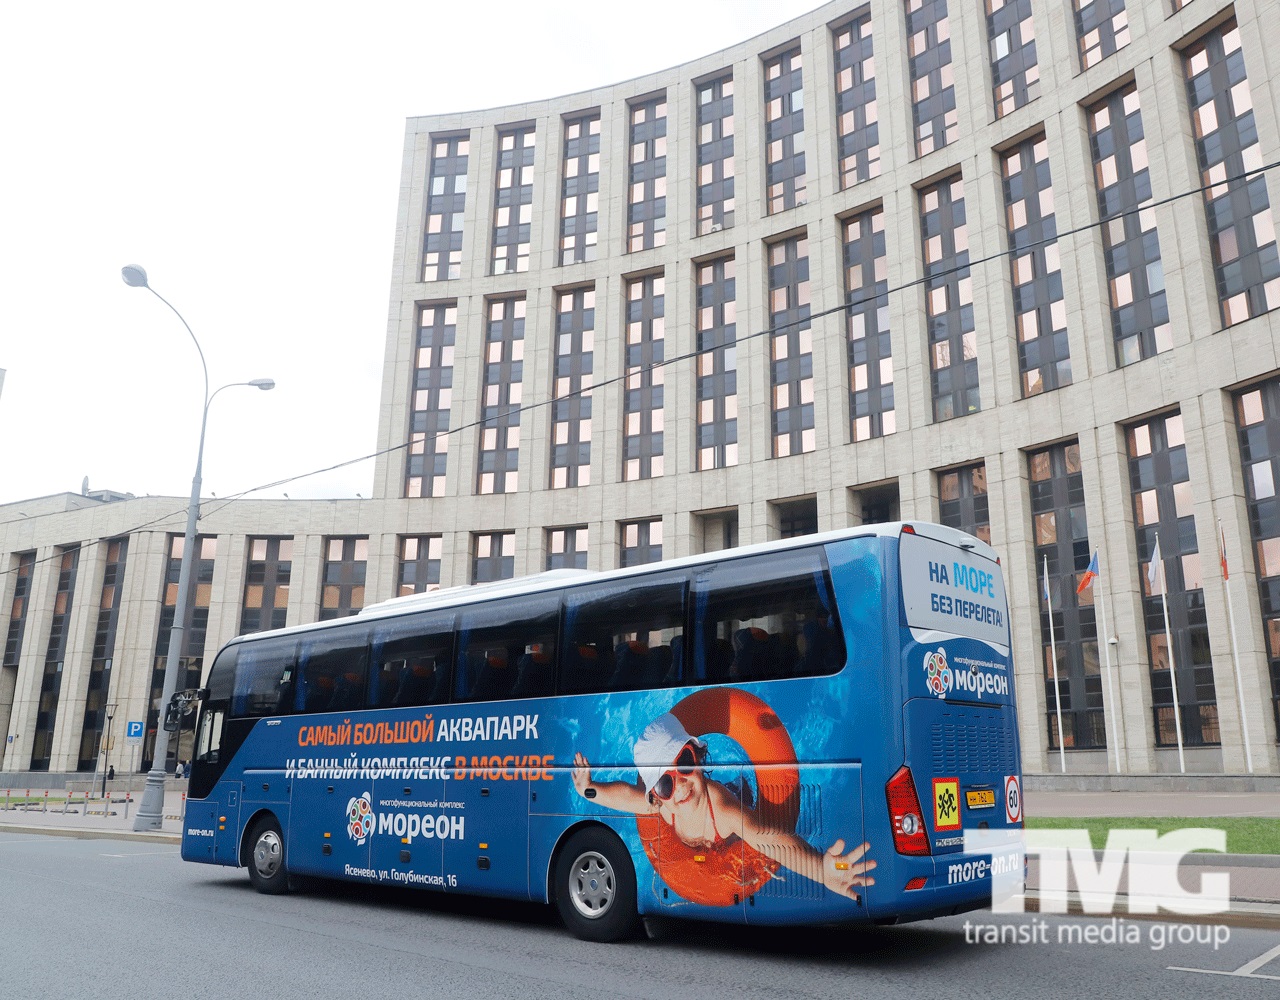 TMG Мореон наружная реклама на транспорте Москва